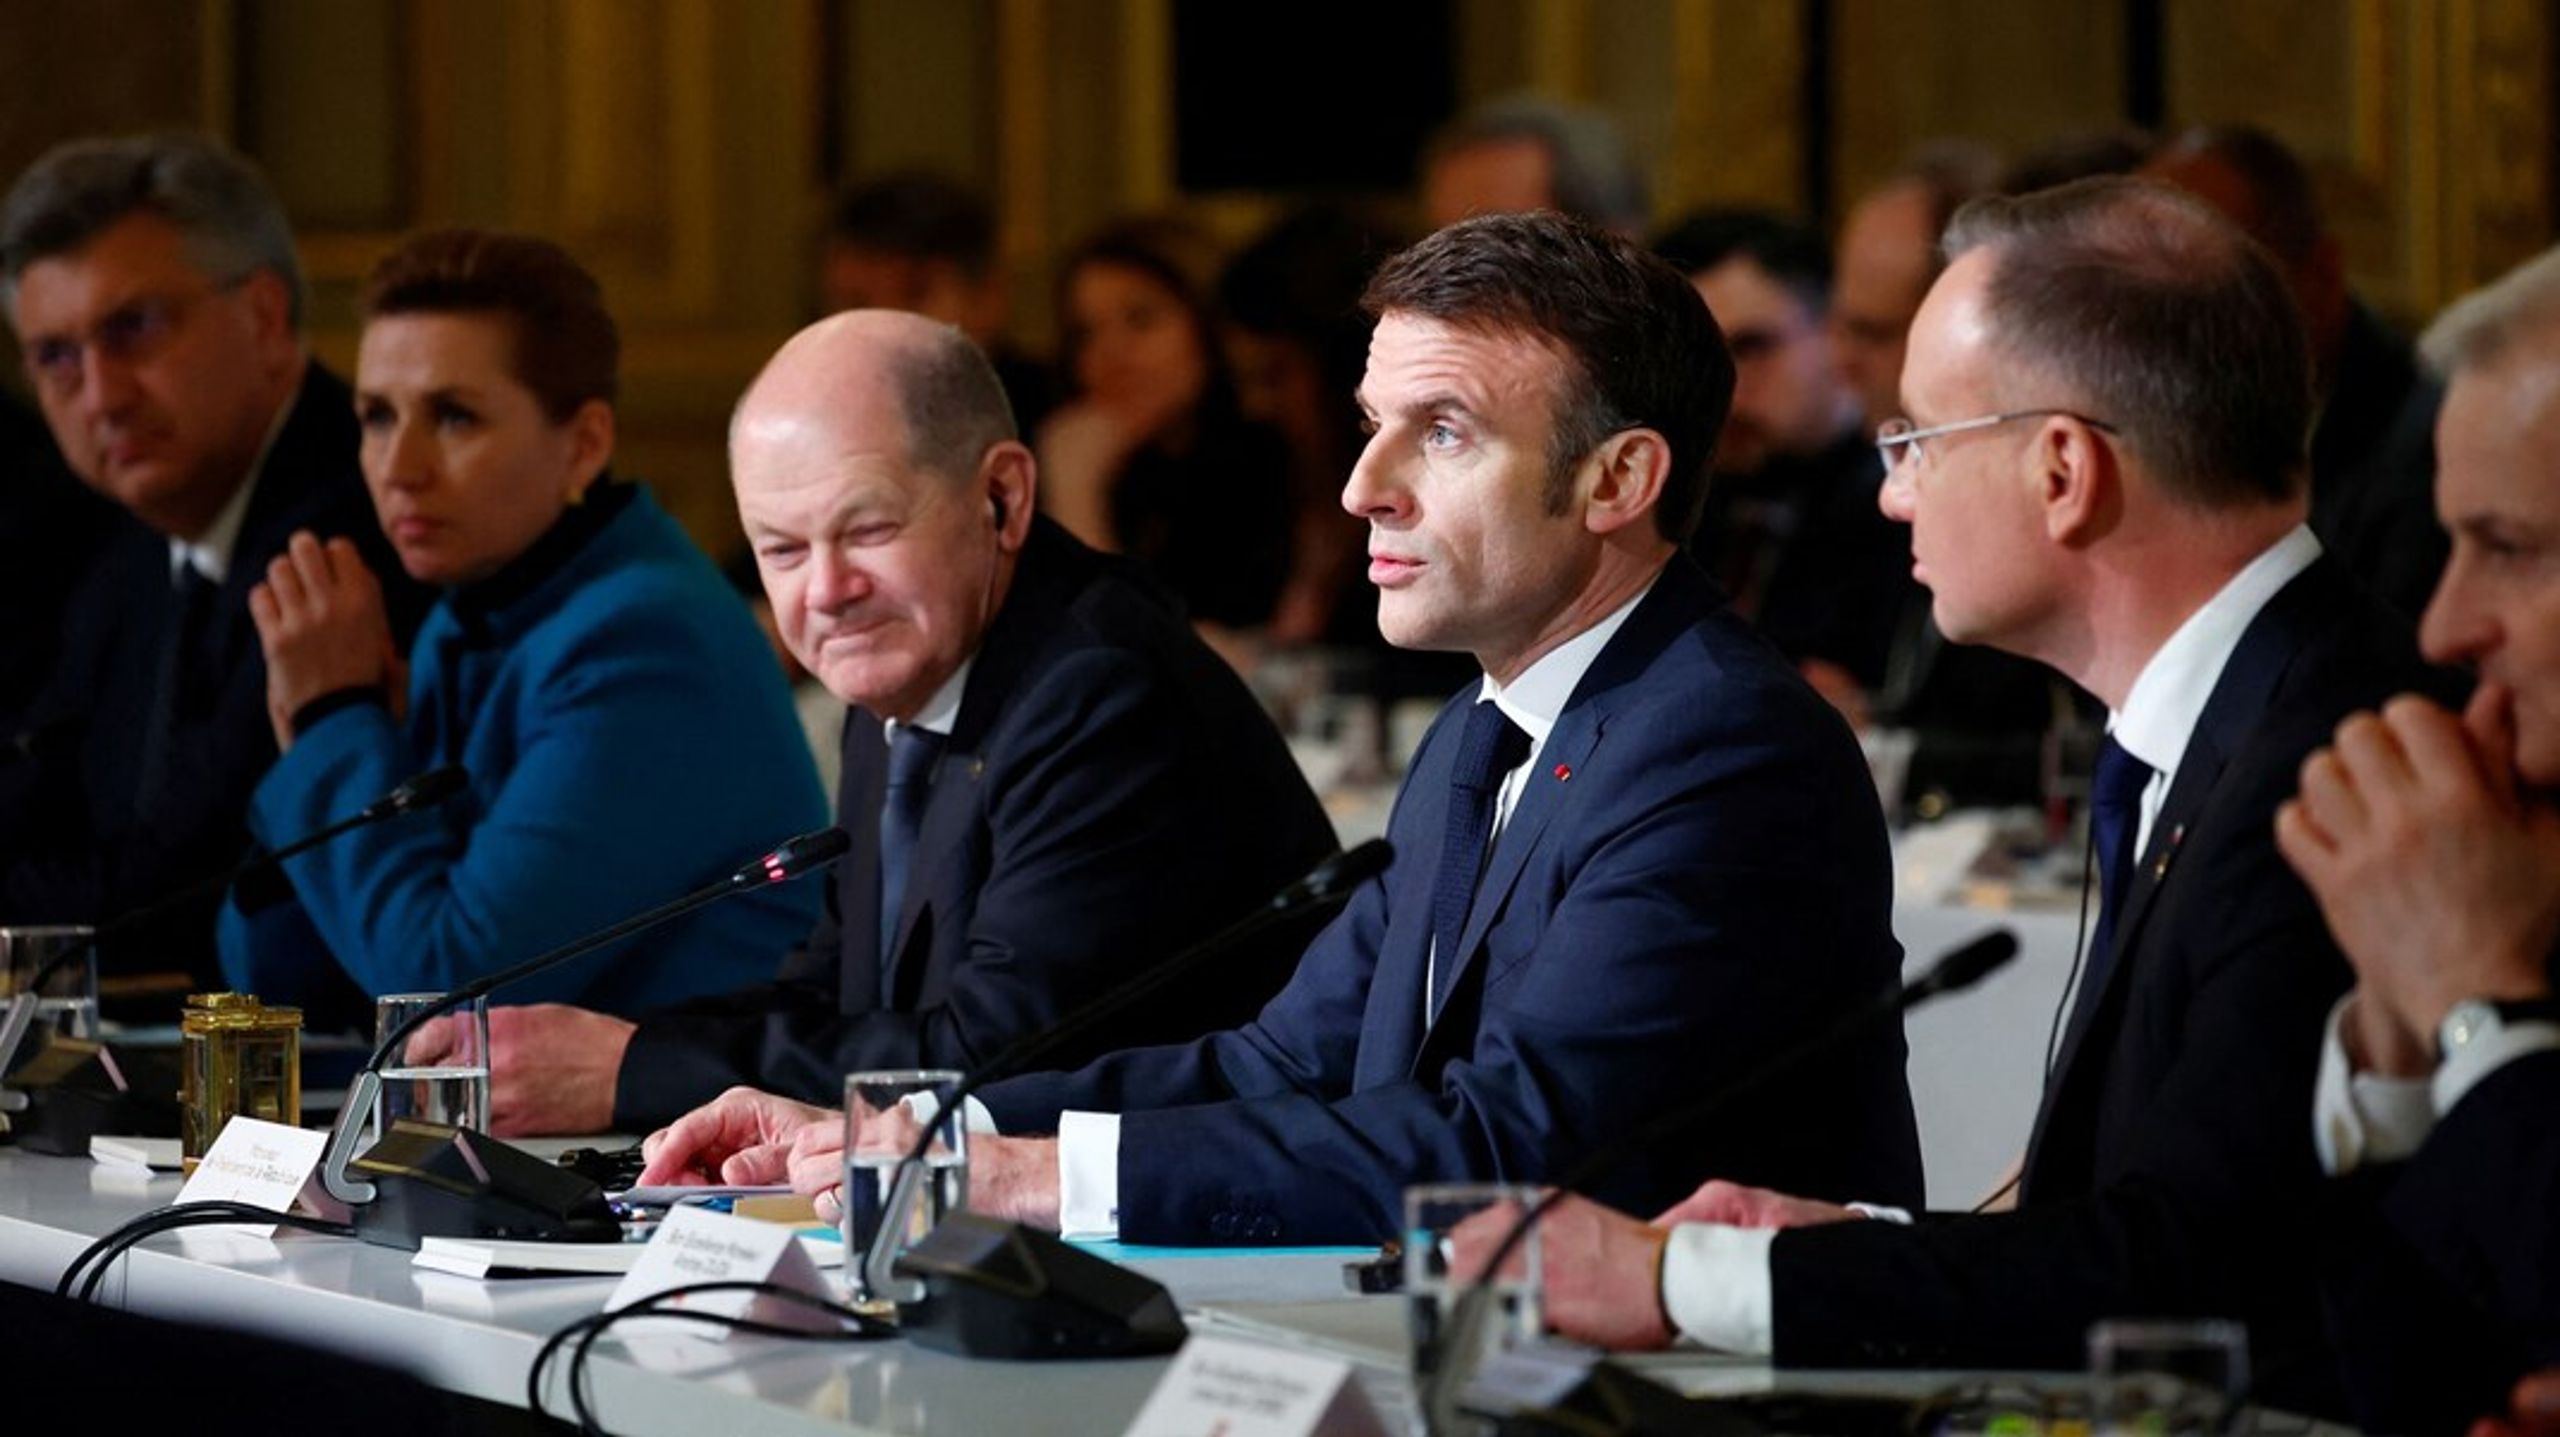 Mandag var Frankrigs præsident, Emmanuel Macron, vært for en konference i Paris i anledning af toårsdagen for Ruslands invasion af Ukraine. Blandt ledere og ministre fra 20 vestlige lande var statsminister Mette Frederiksen (S) og Tysklands forbundskansler, Olaf Scholz.